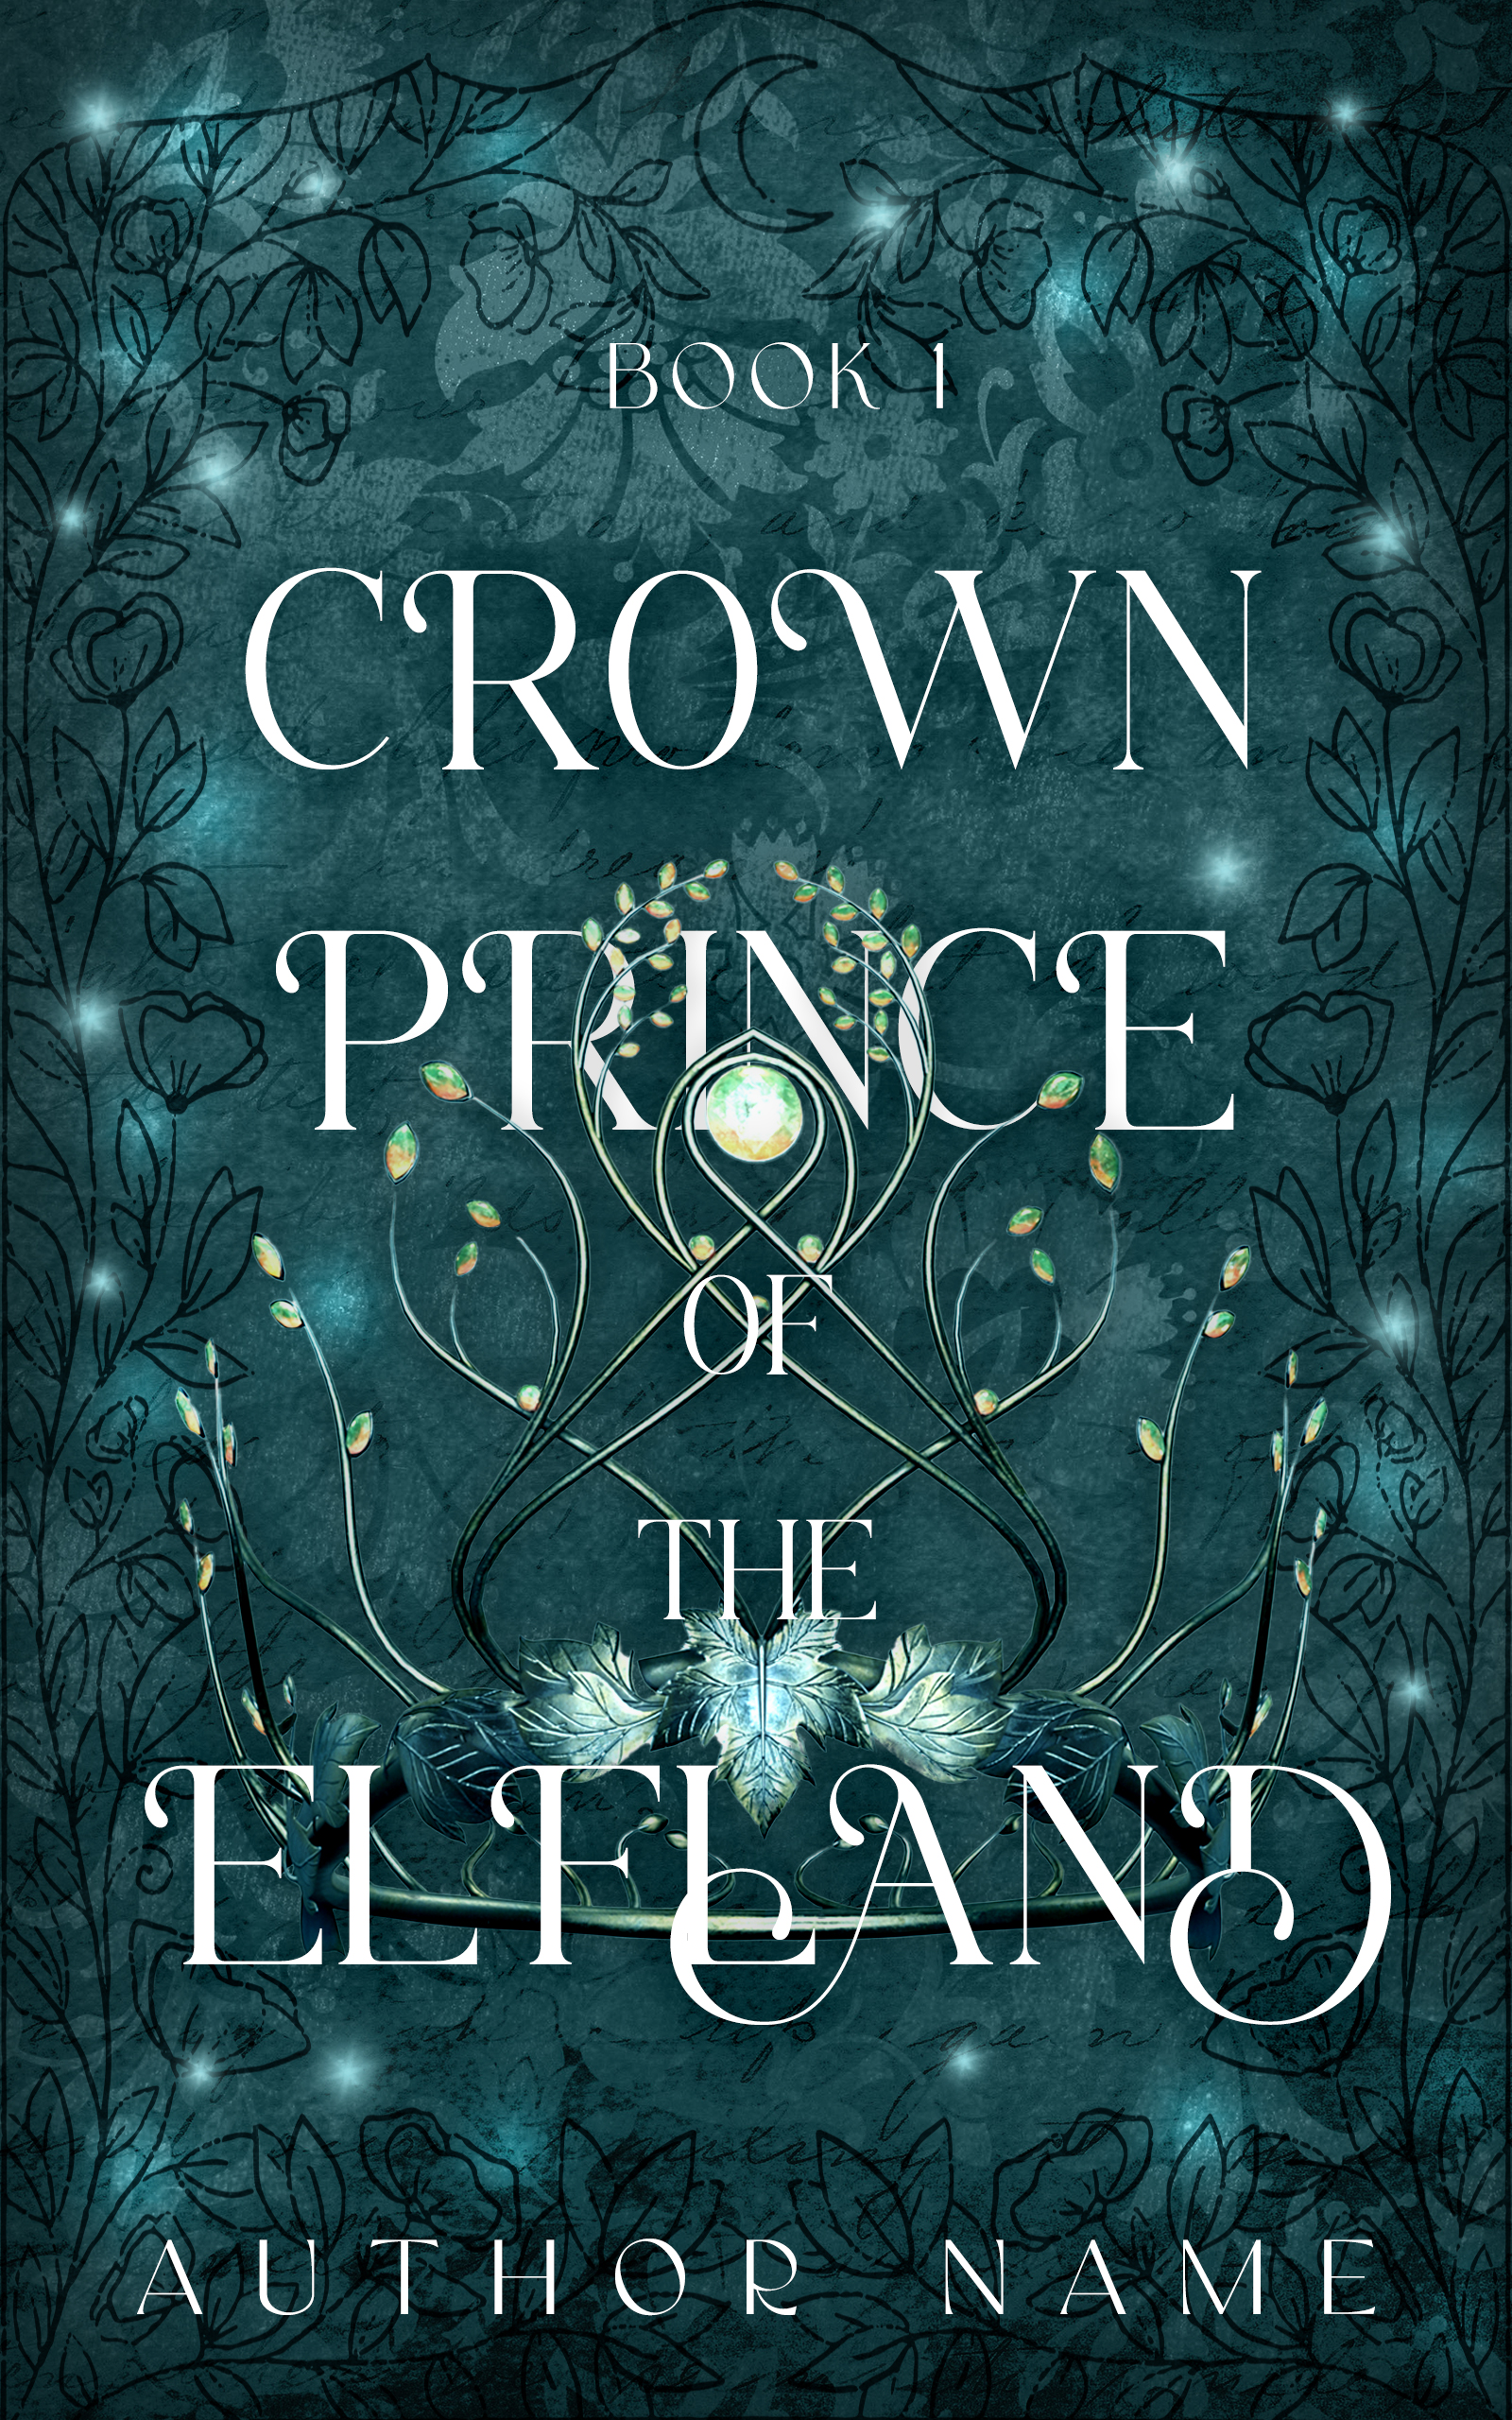 Fae prince book cover design.